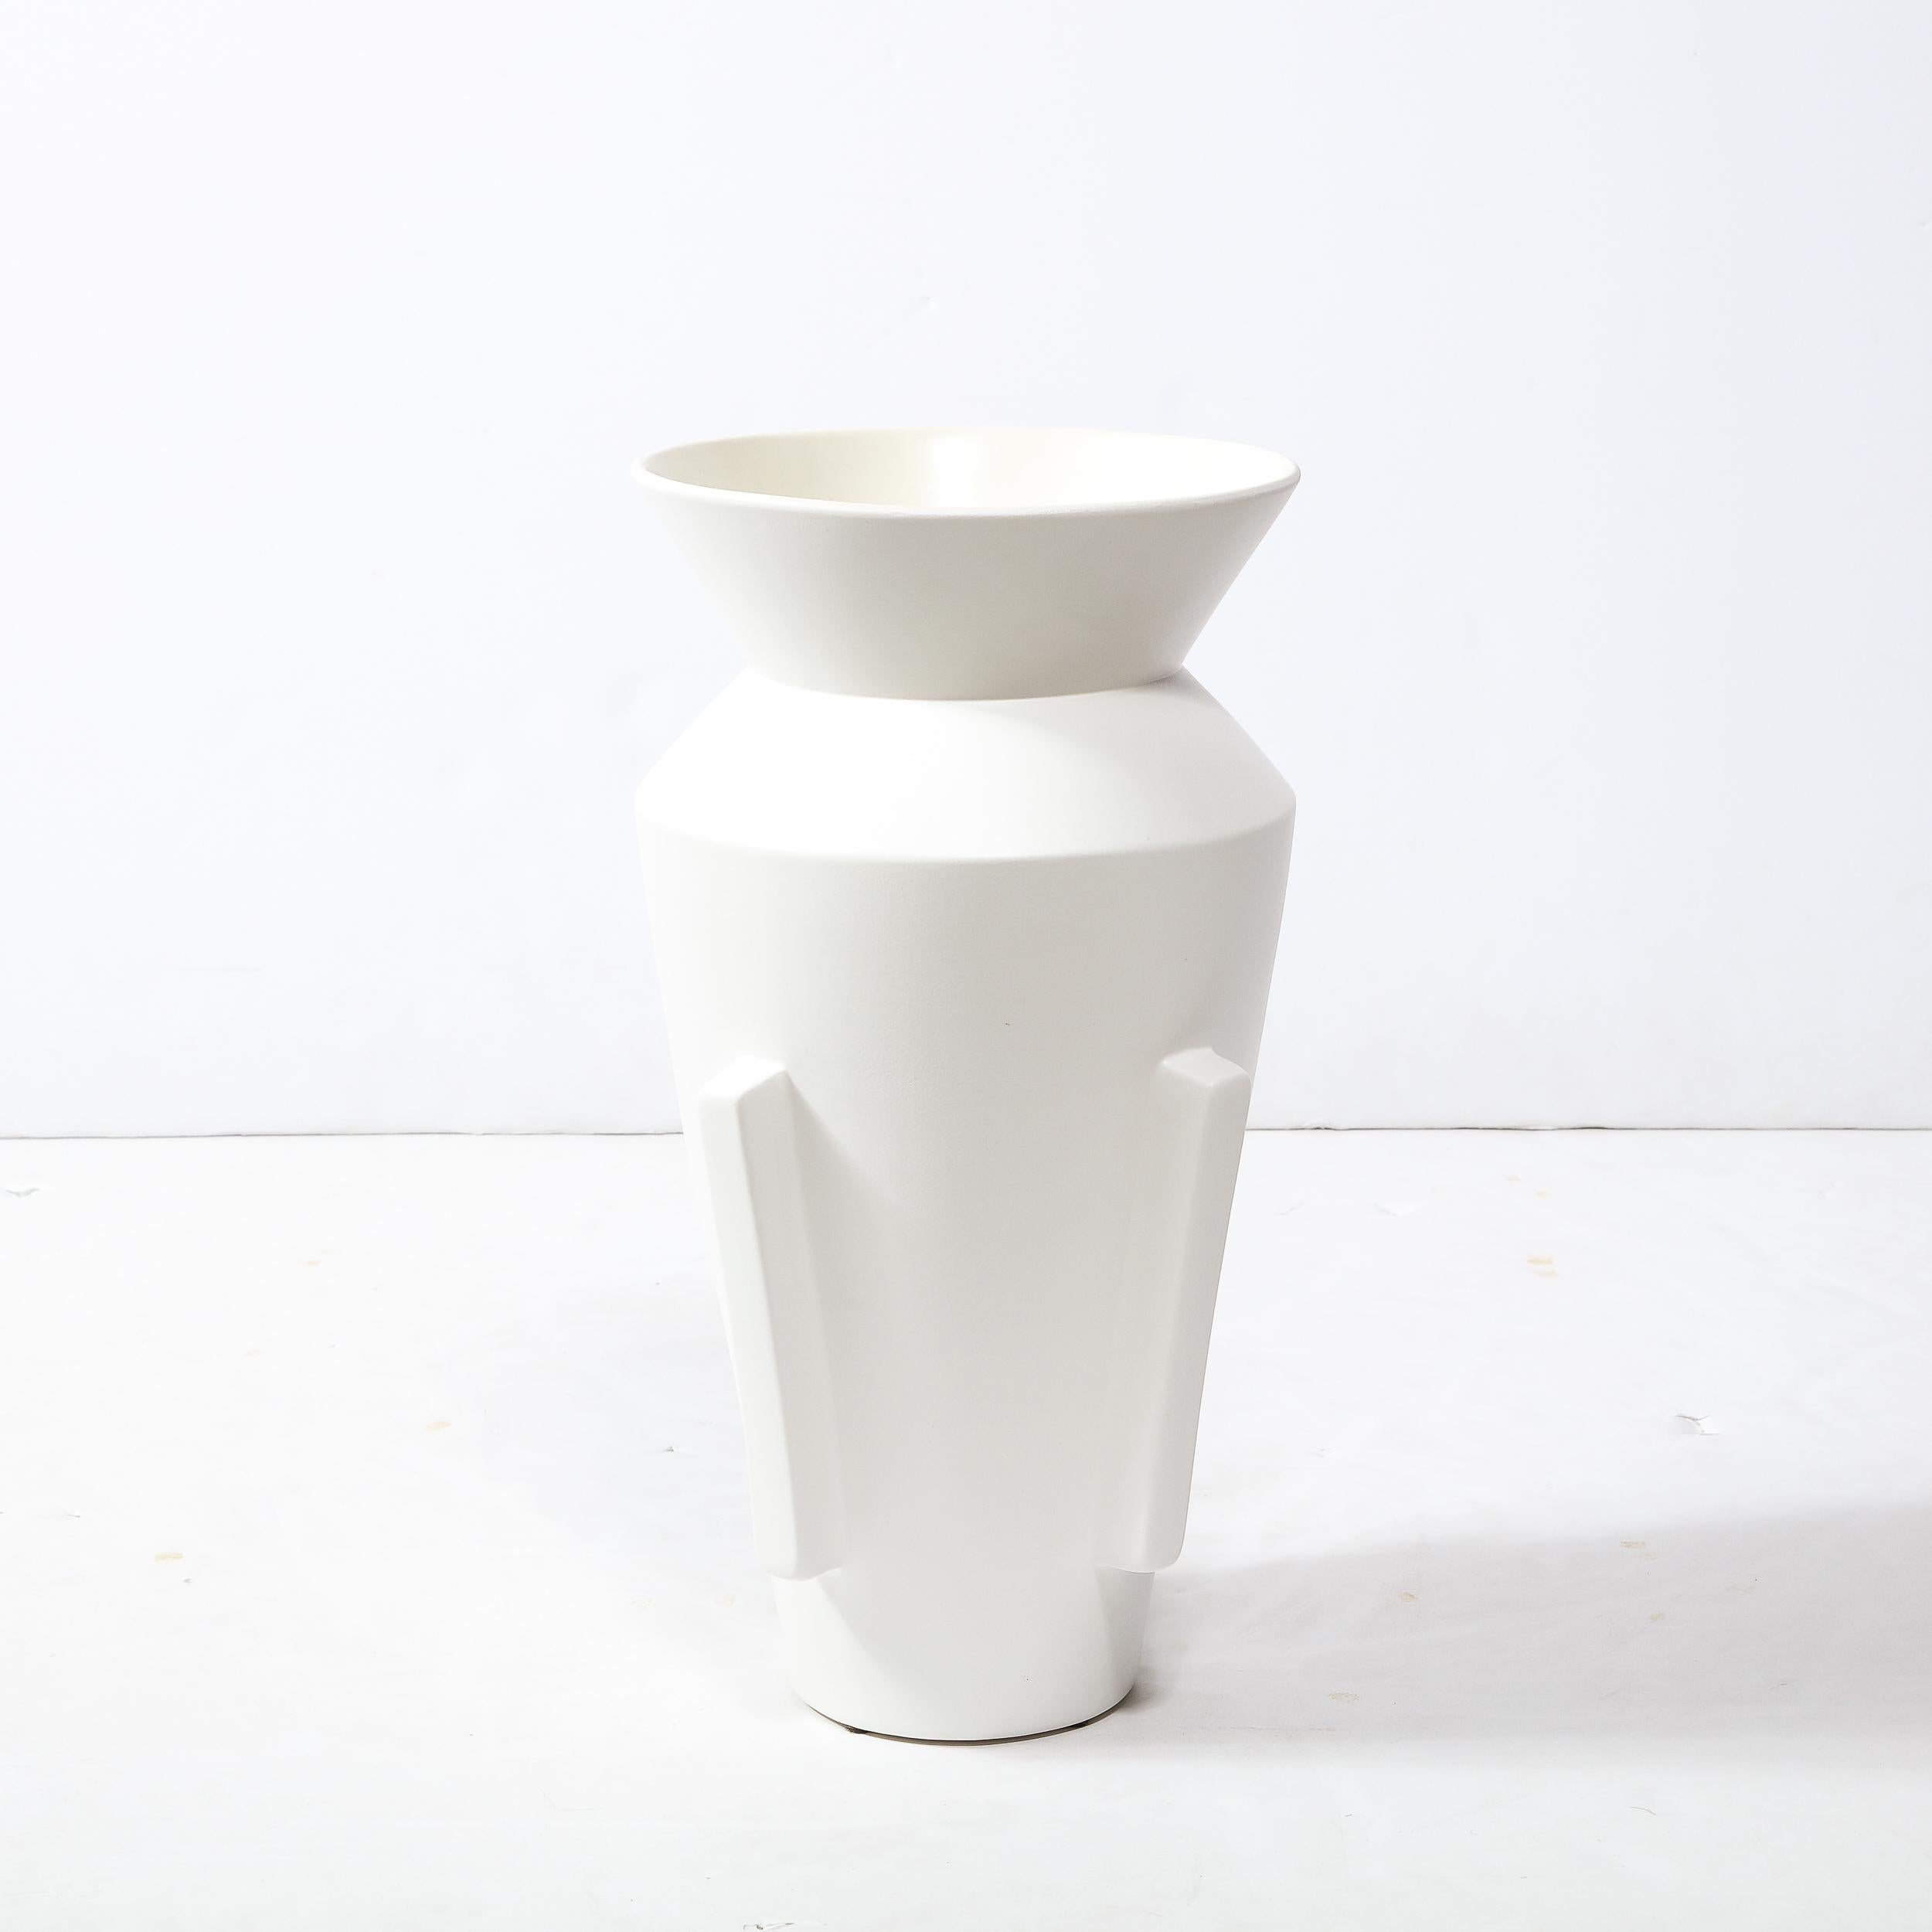 Ce vase moderniste raffiné en forme d'urne a été réalisé aux États-Unis au cours de la seconde moitié du XXe siècle. Il présente un corps conique qui s'évase vers un col angulaire où il se rétracte pour rejoindre le cou qui s'évase à nouveau vers